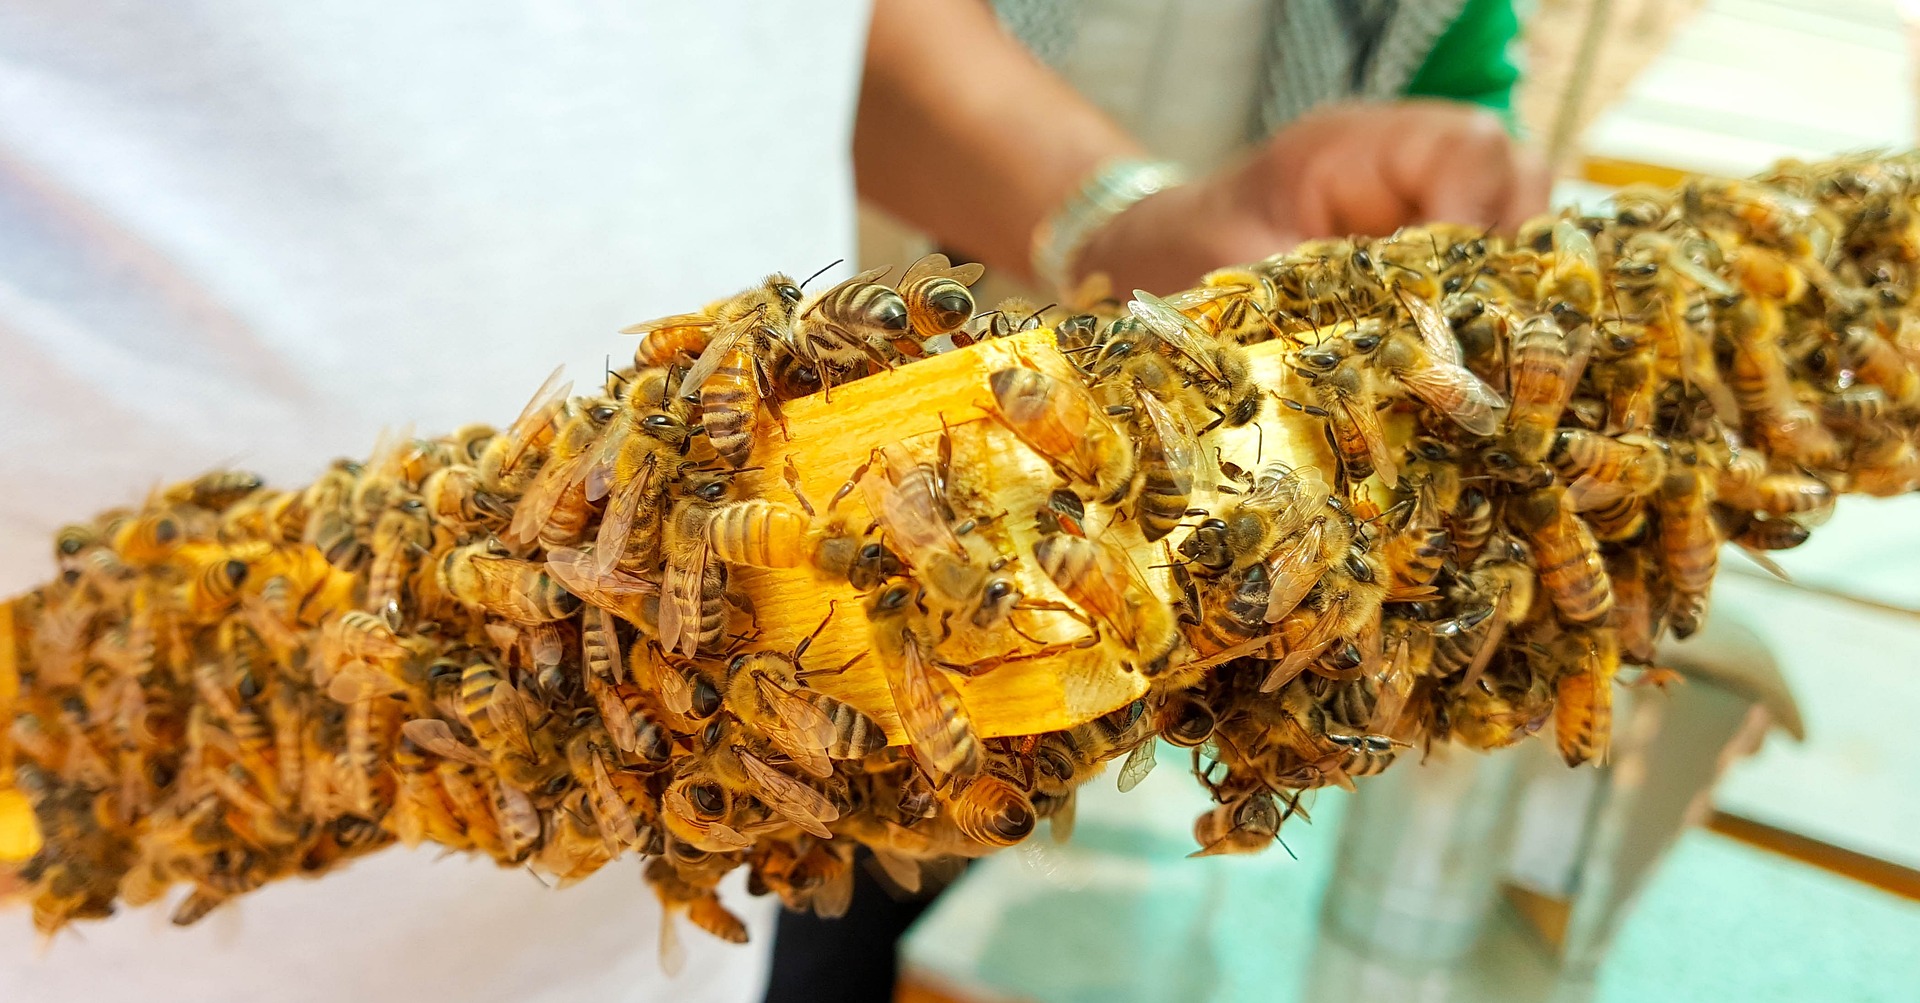 Co to znaczy, że pszczoły zimują i co jest dla nich największym zagrożeniem?